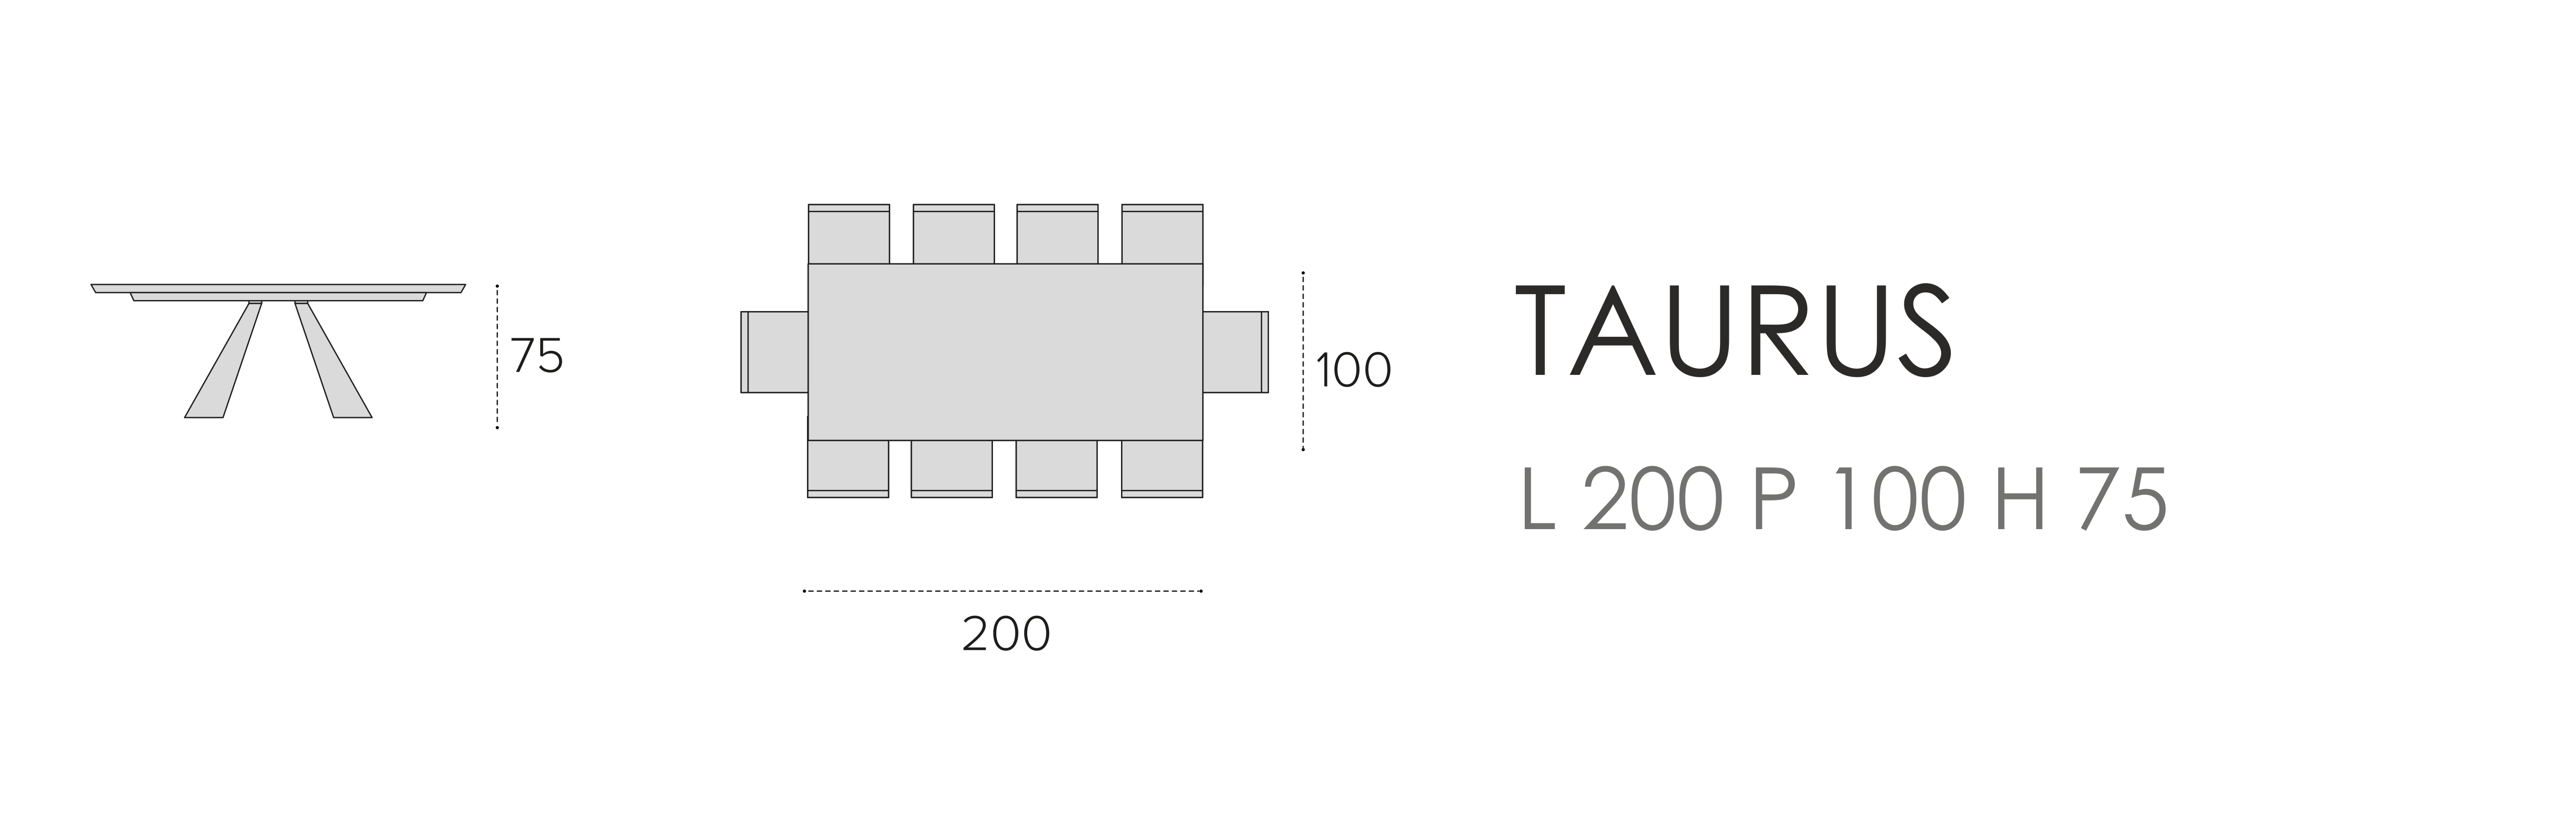 Taurus L 200 P 100 H 75